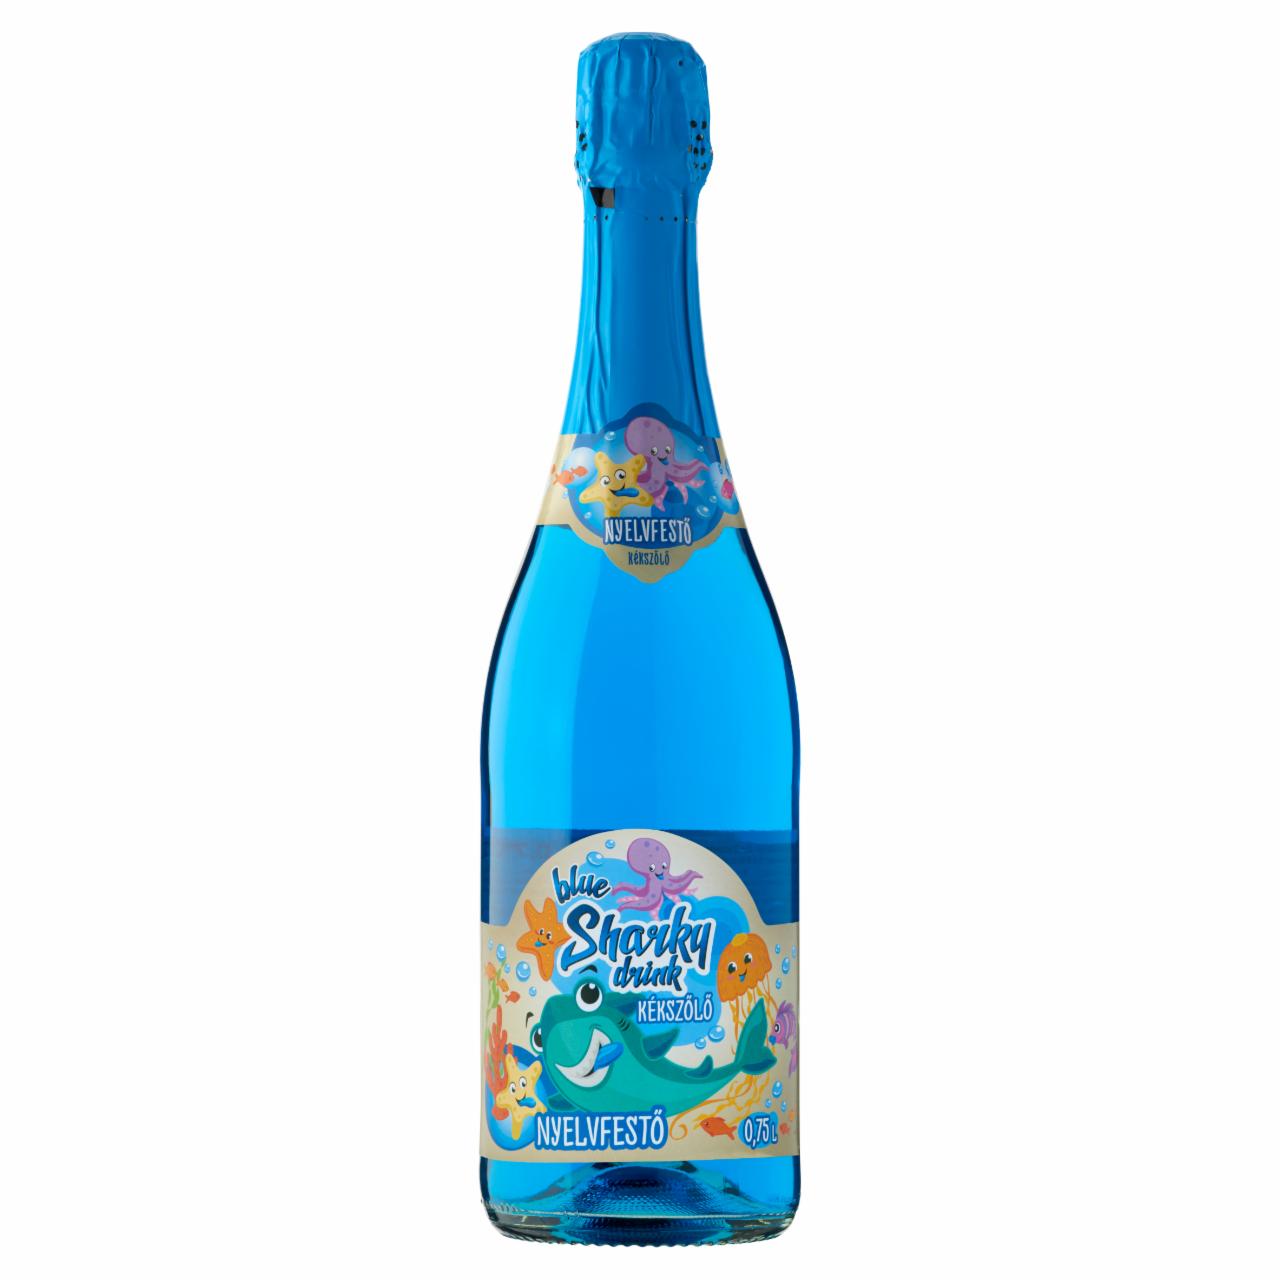 Képek - Sharky alkoholmentes kékszőlő ízű szénsavas üdítőital cukorral és édesítőszerrel 0,75 l